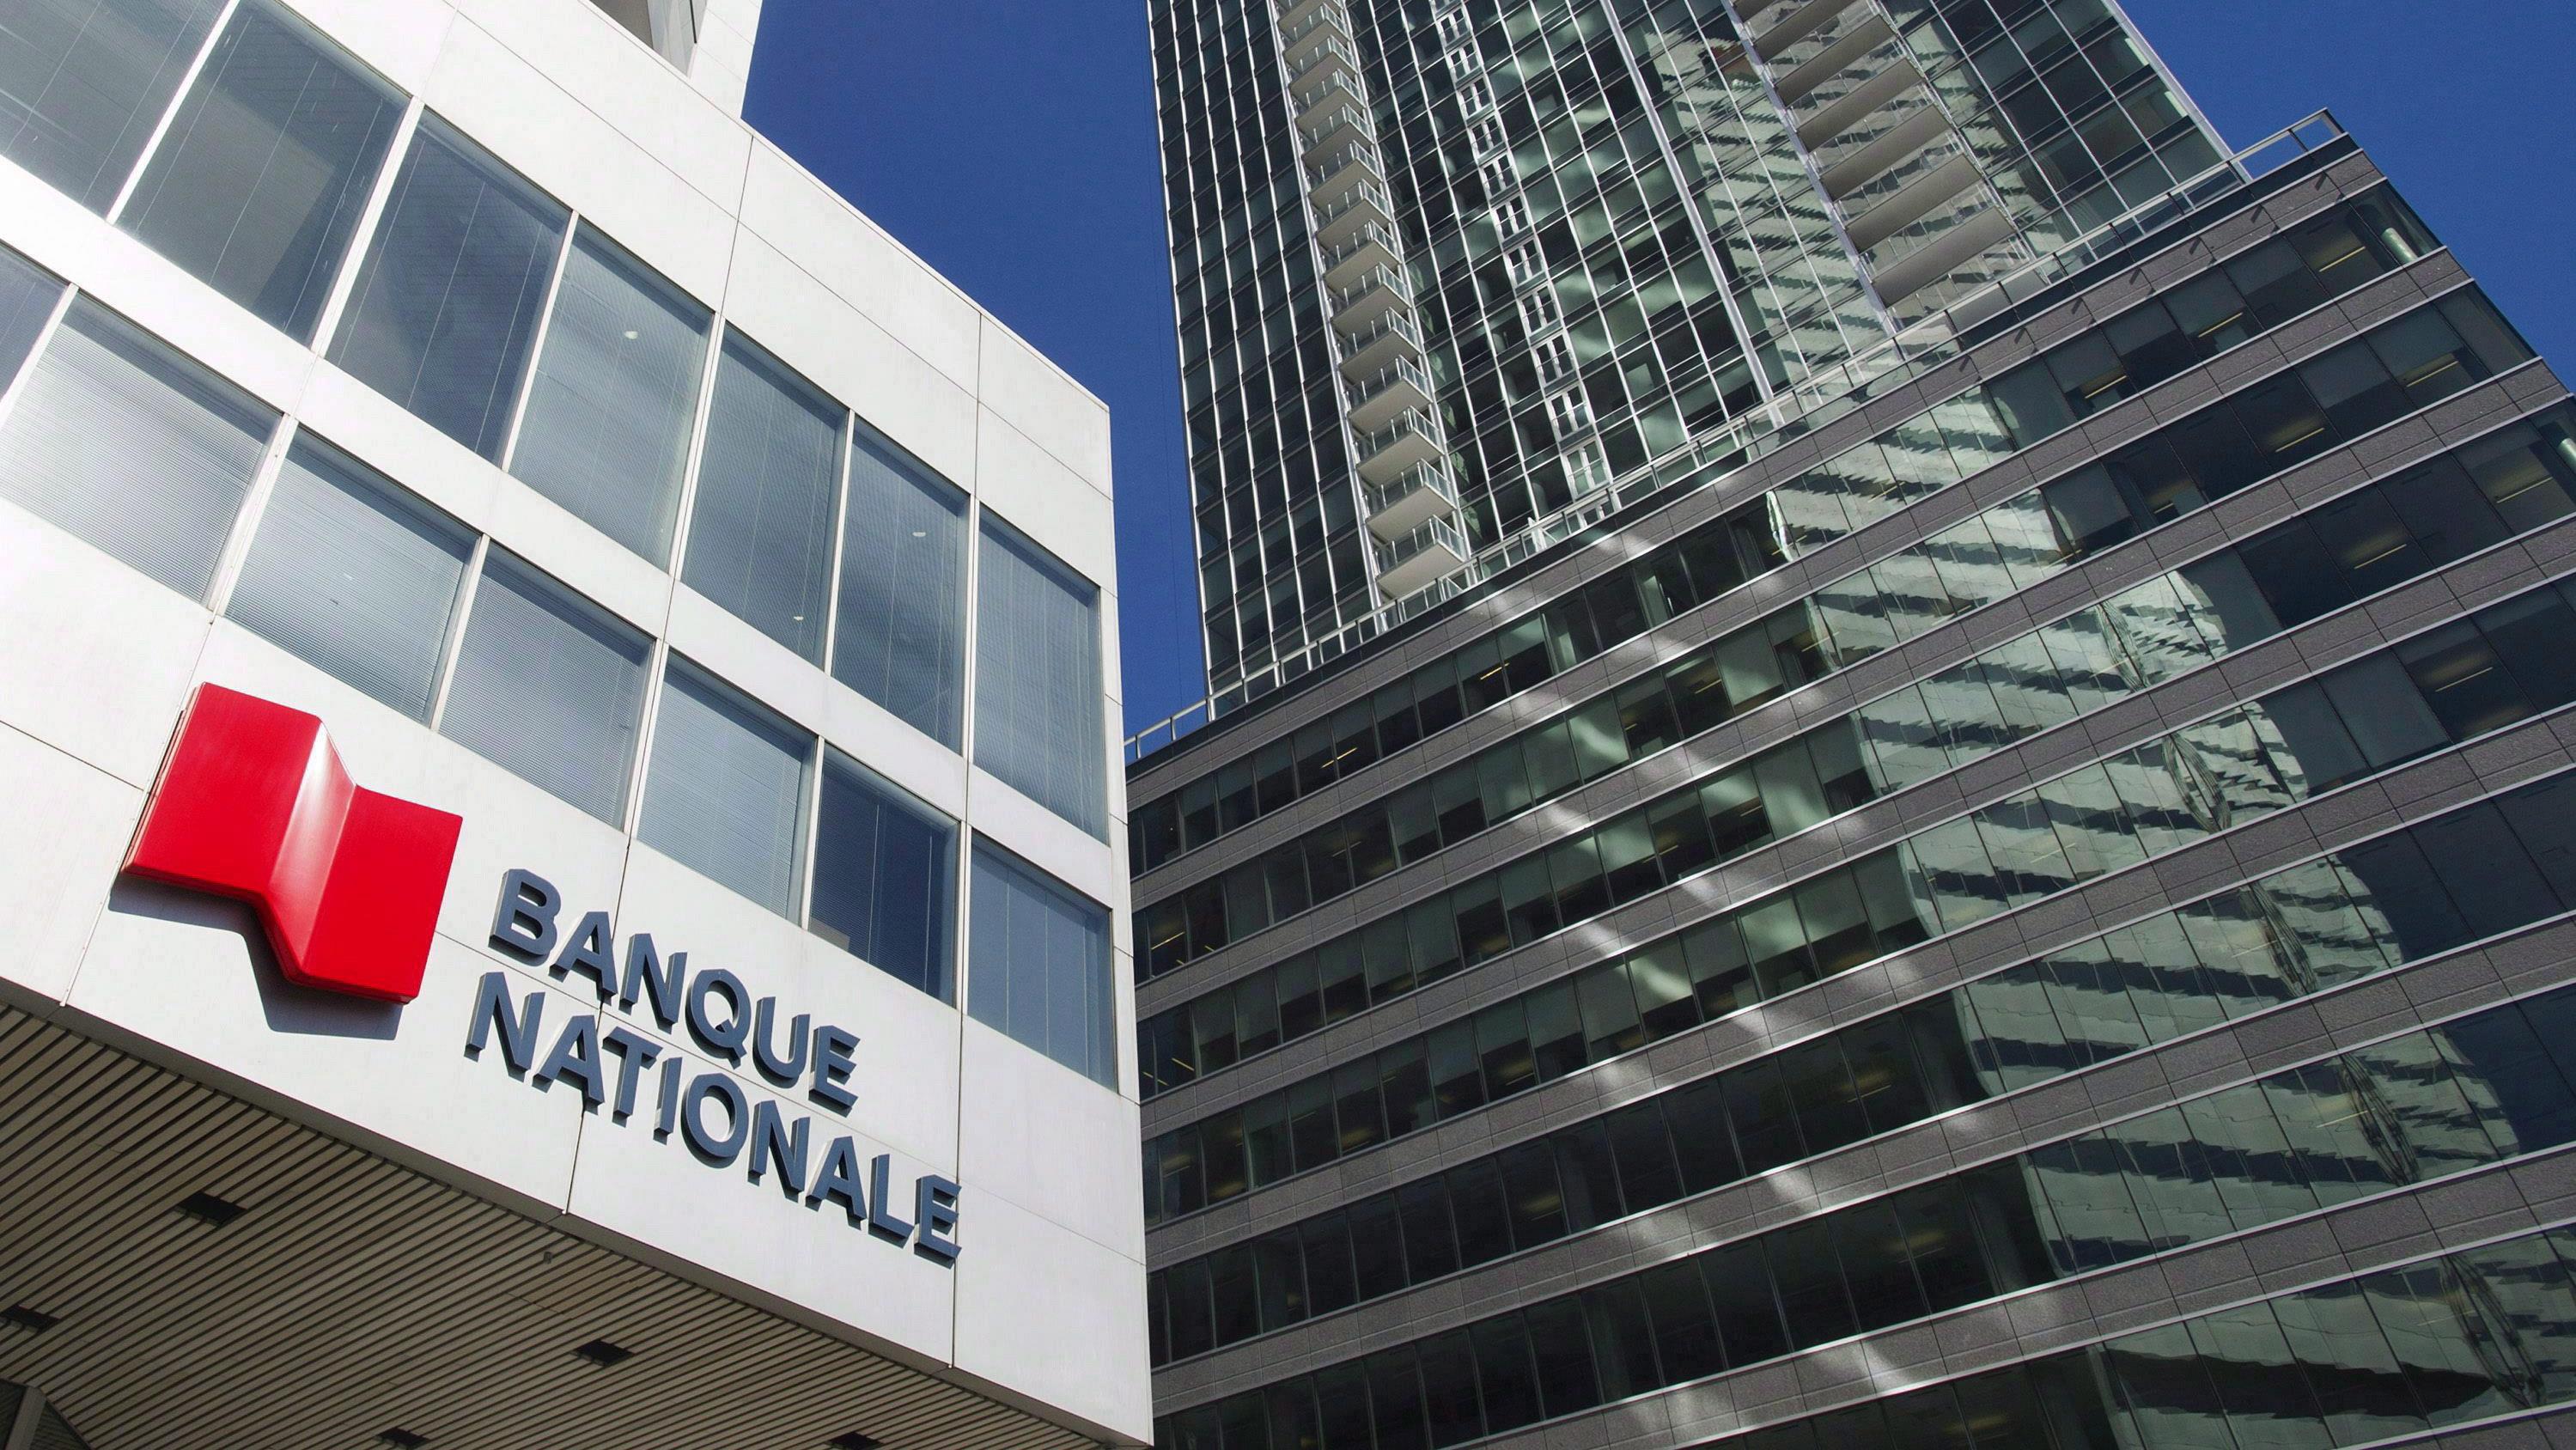 La Banque Nationale aura un nouveau siège social à Montréal